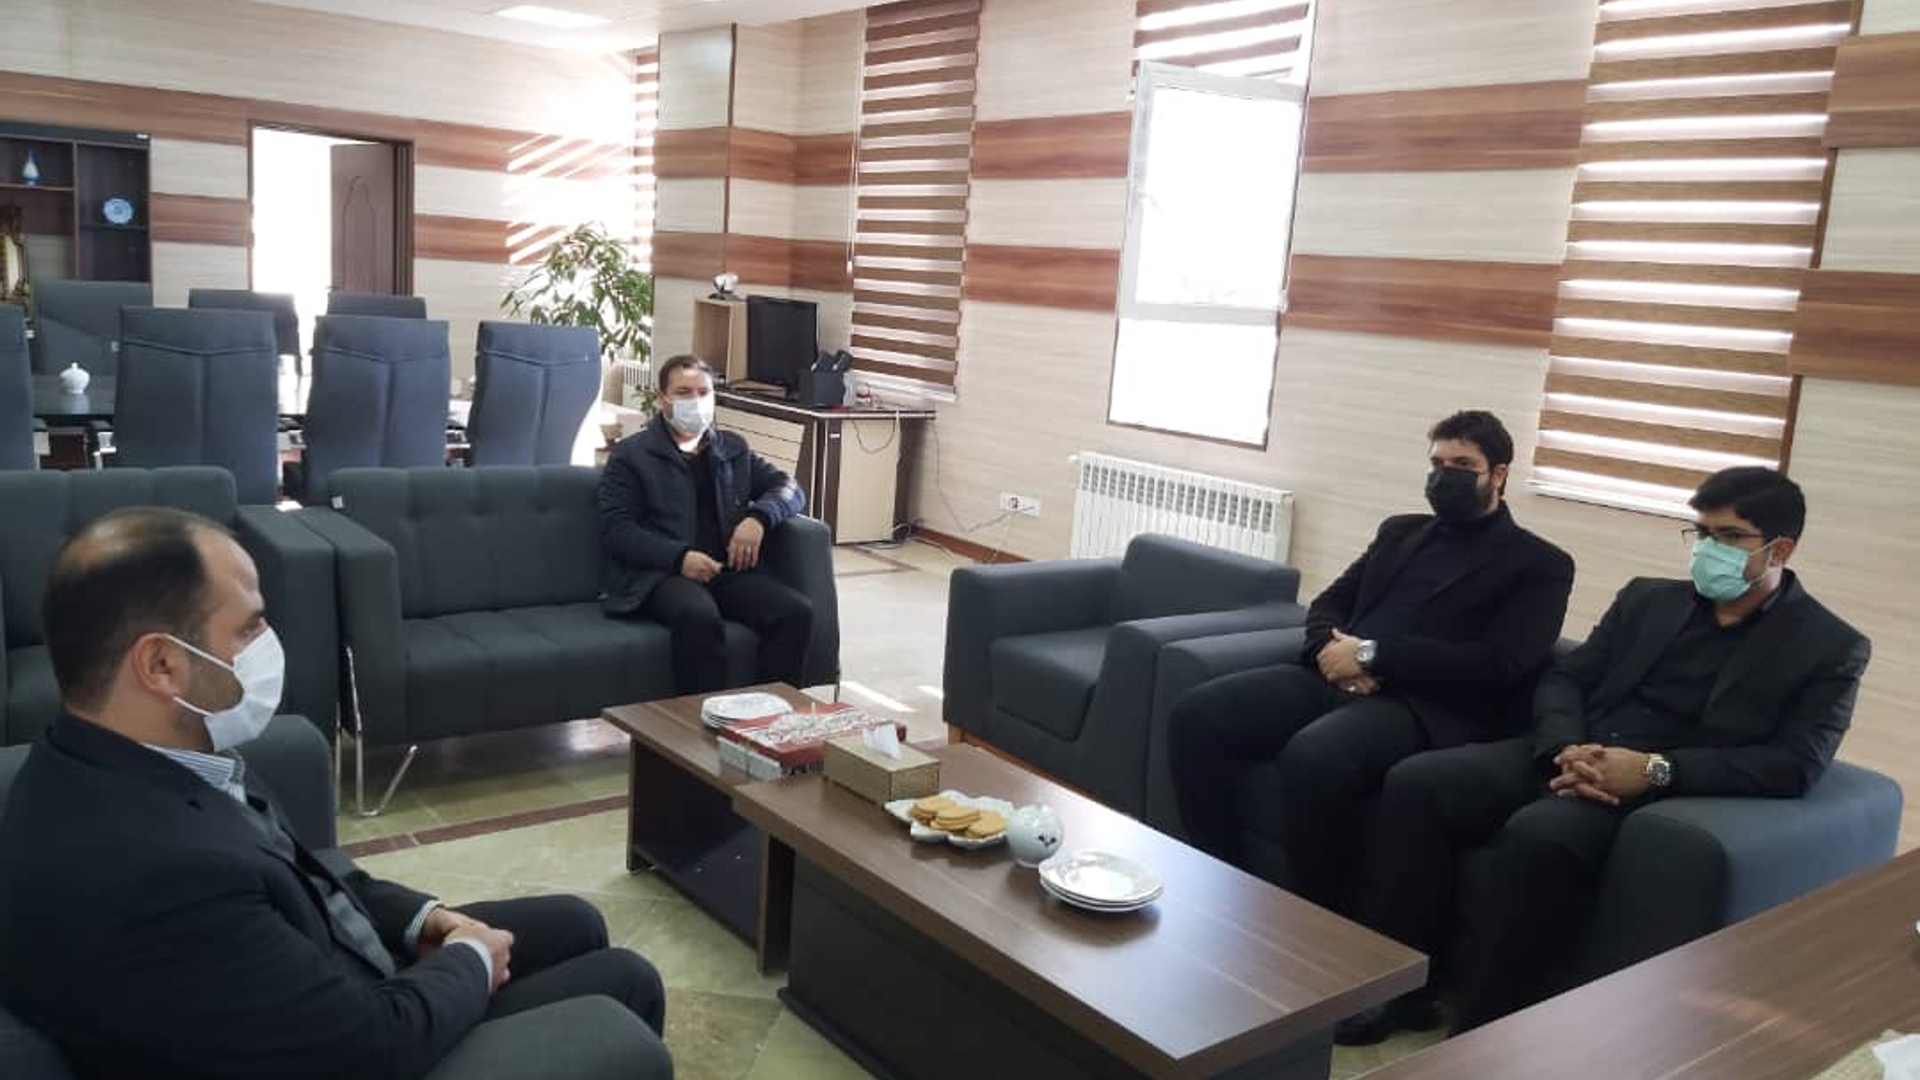 دیدار حسینی رئیس دادگستری به اتفاق تعدادی از پرسنل با علی اکبر فراهانی سرپرست فرمانداری شهرستان آشتیان